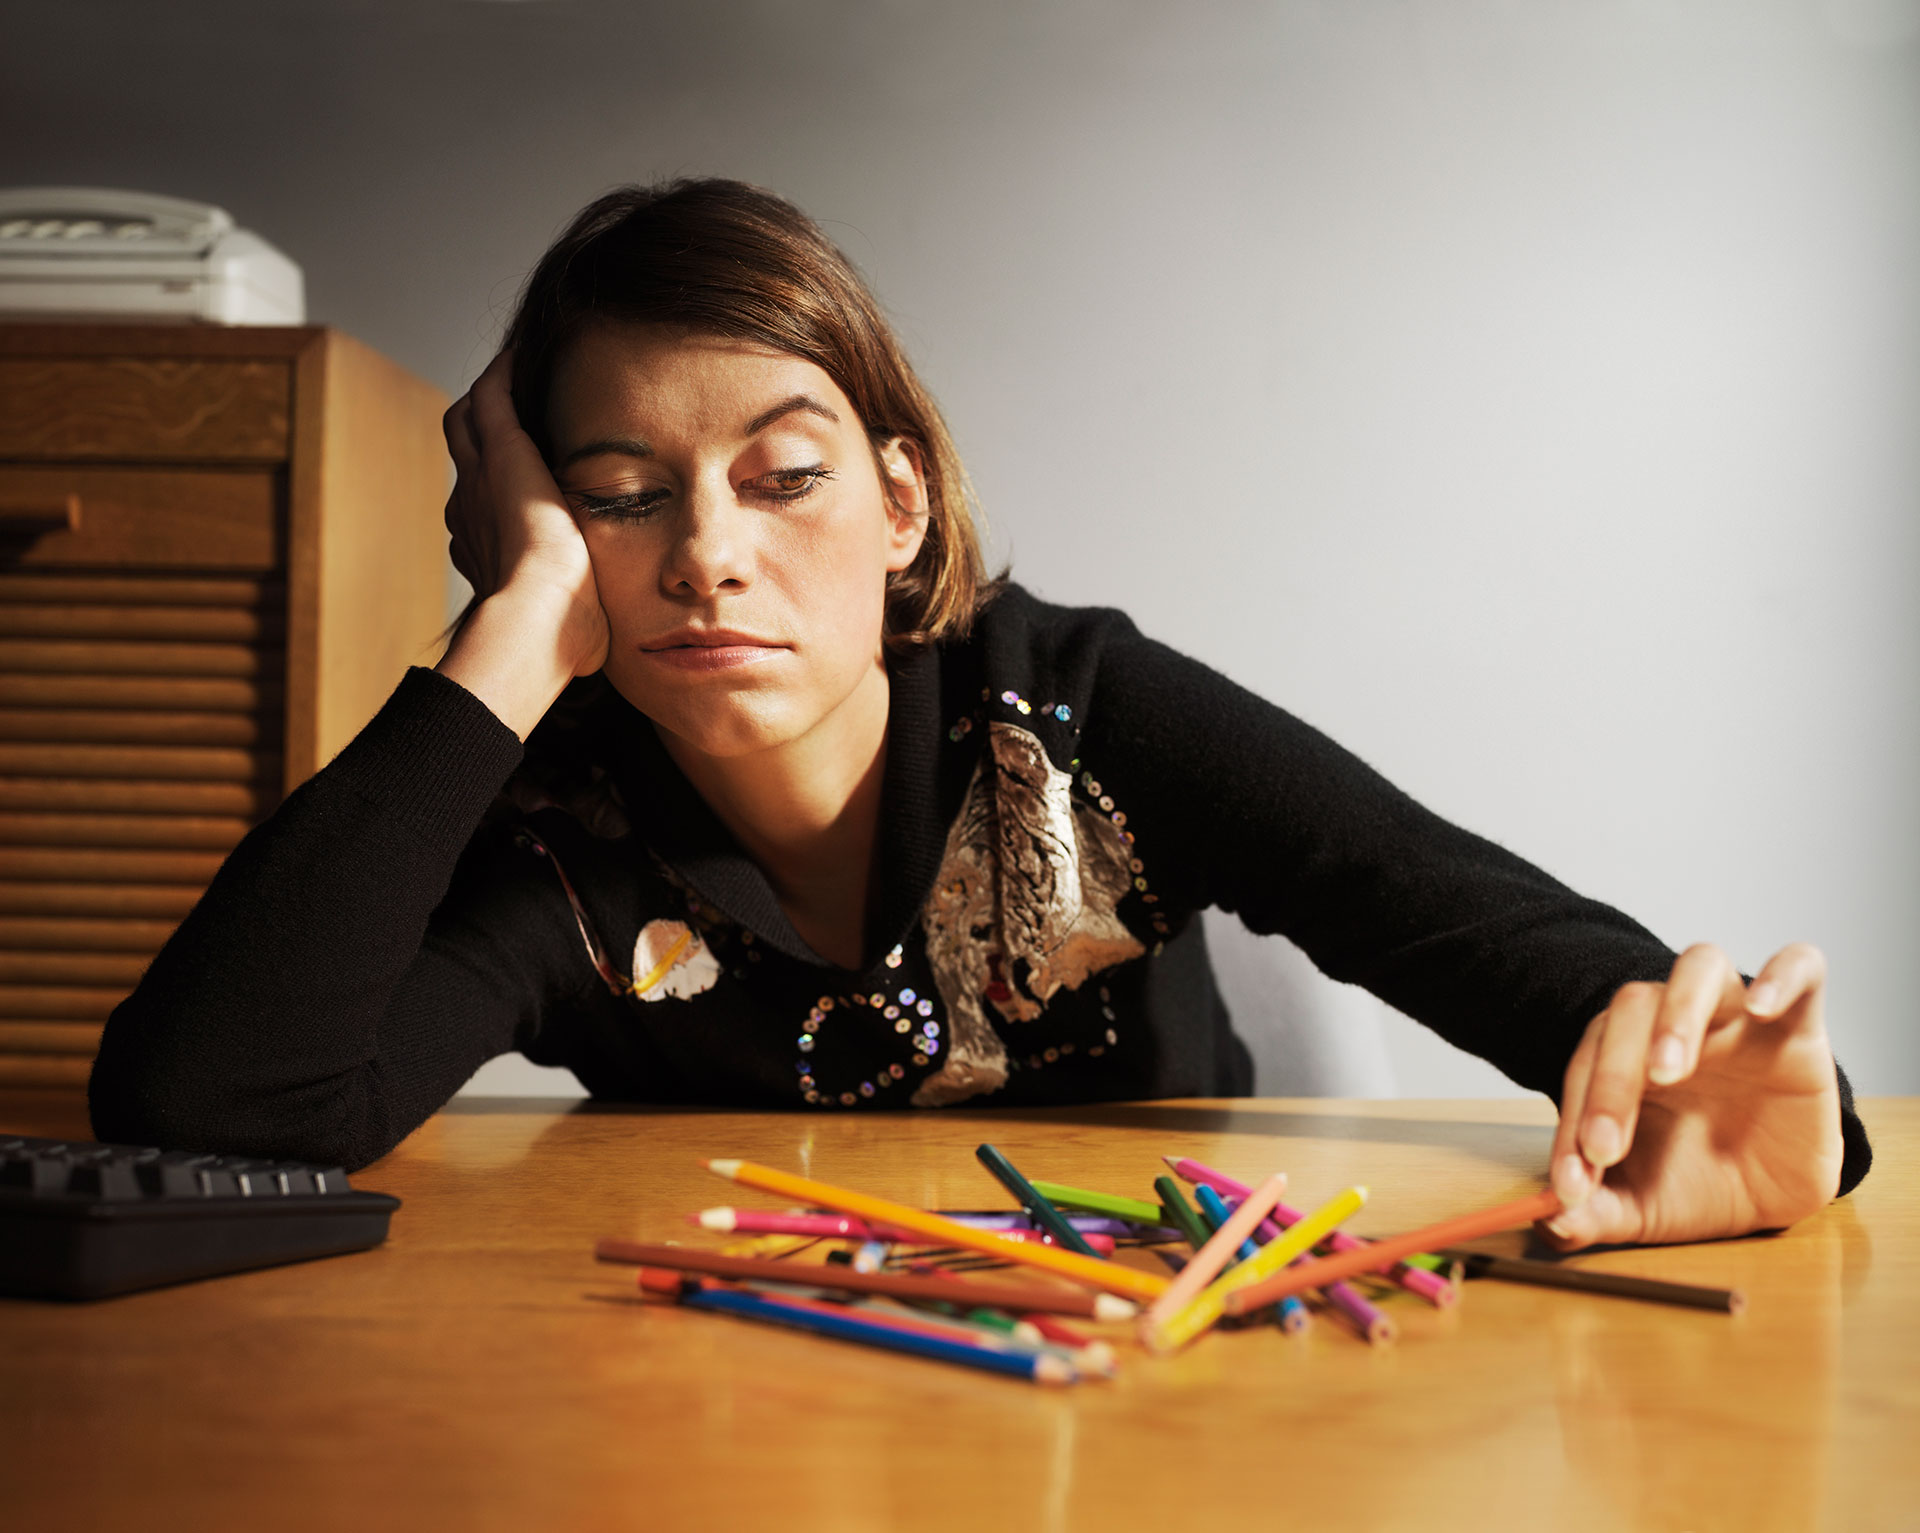 Cuando se postergan tareas, es recomendable recordar momentos en que se pudo superar la procrastinación (Getty Images)